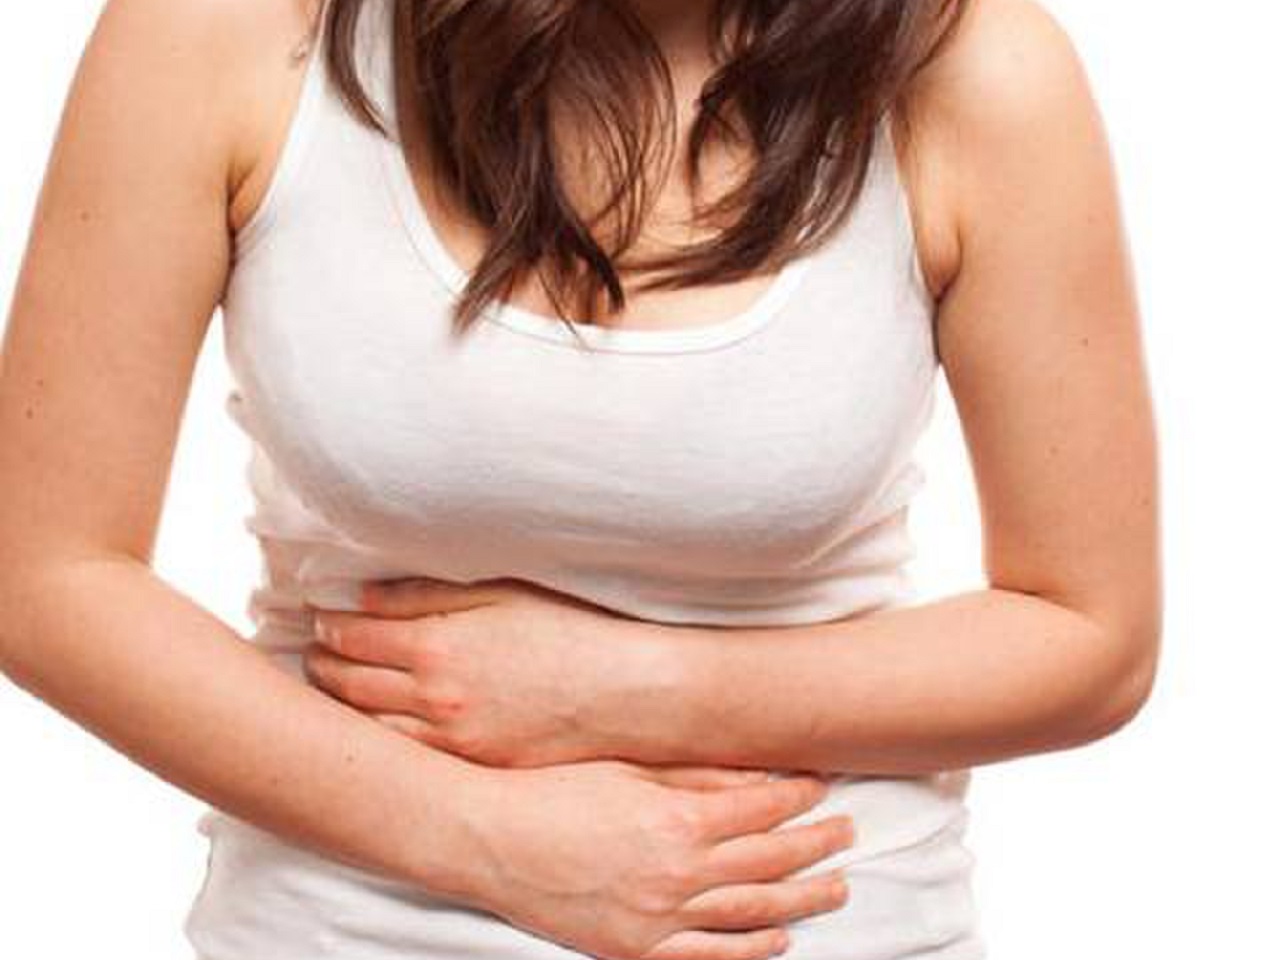 Những cơ quan nội tạng nào được chứa trong vùng bụng?
